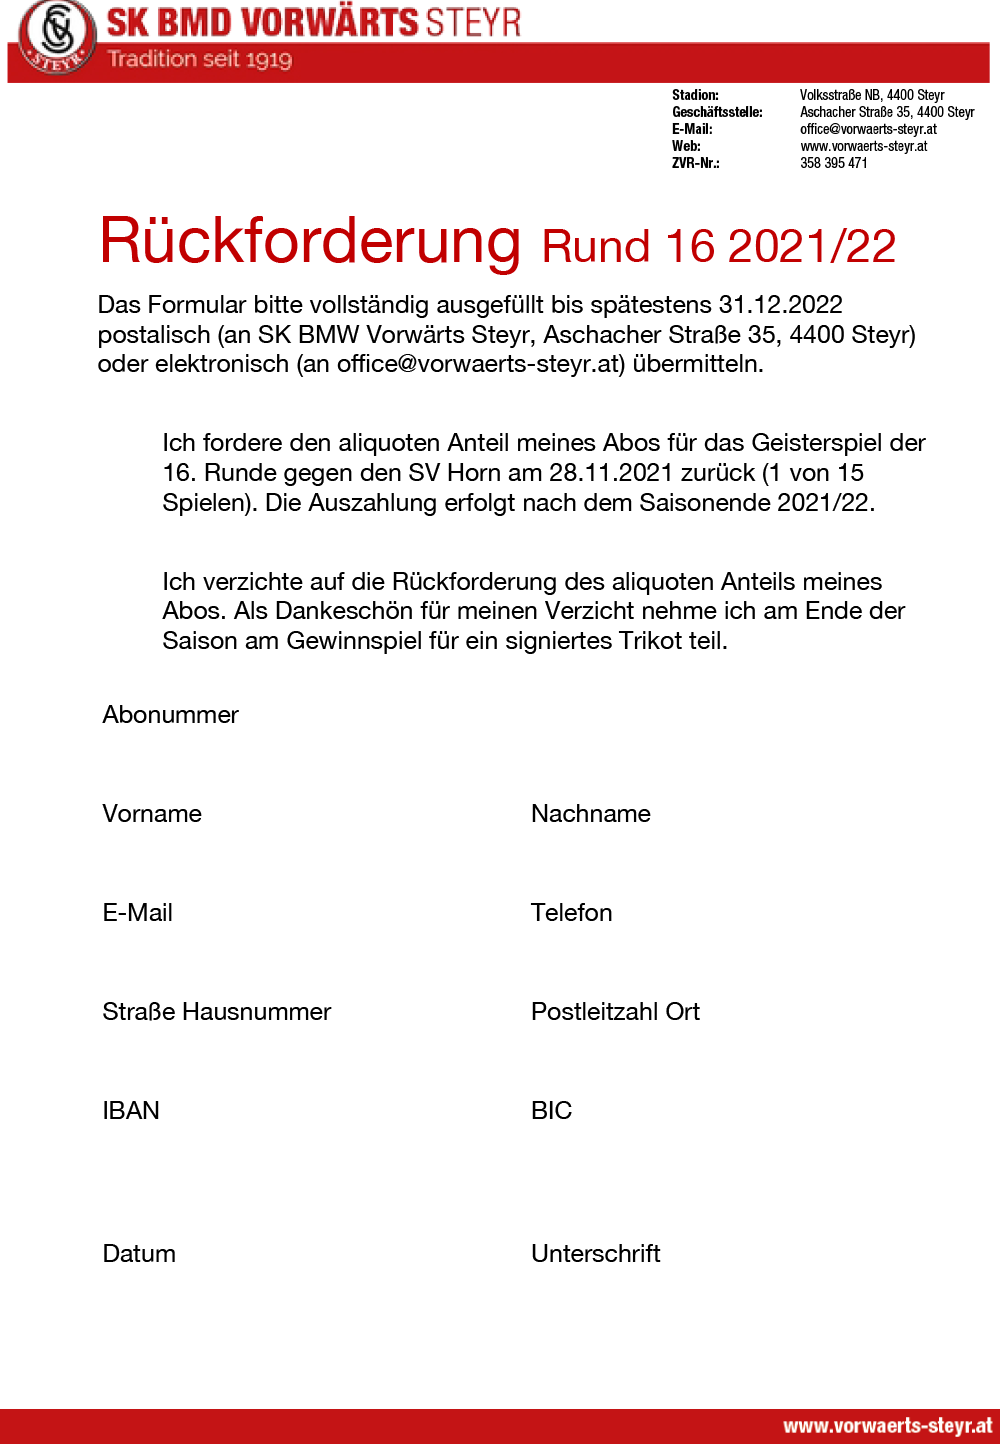 Formular Rückforderung SV Horn 2021/22